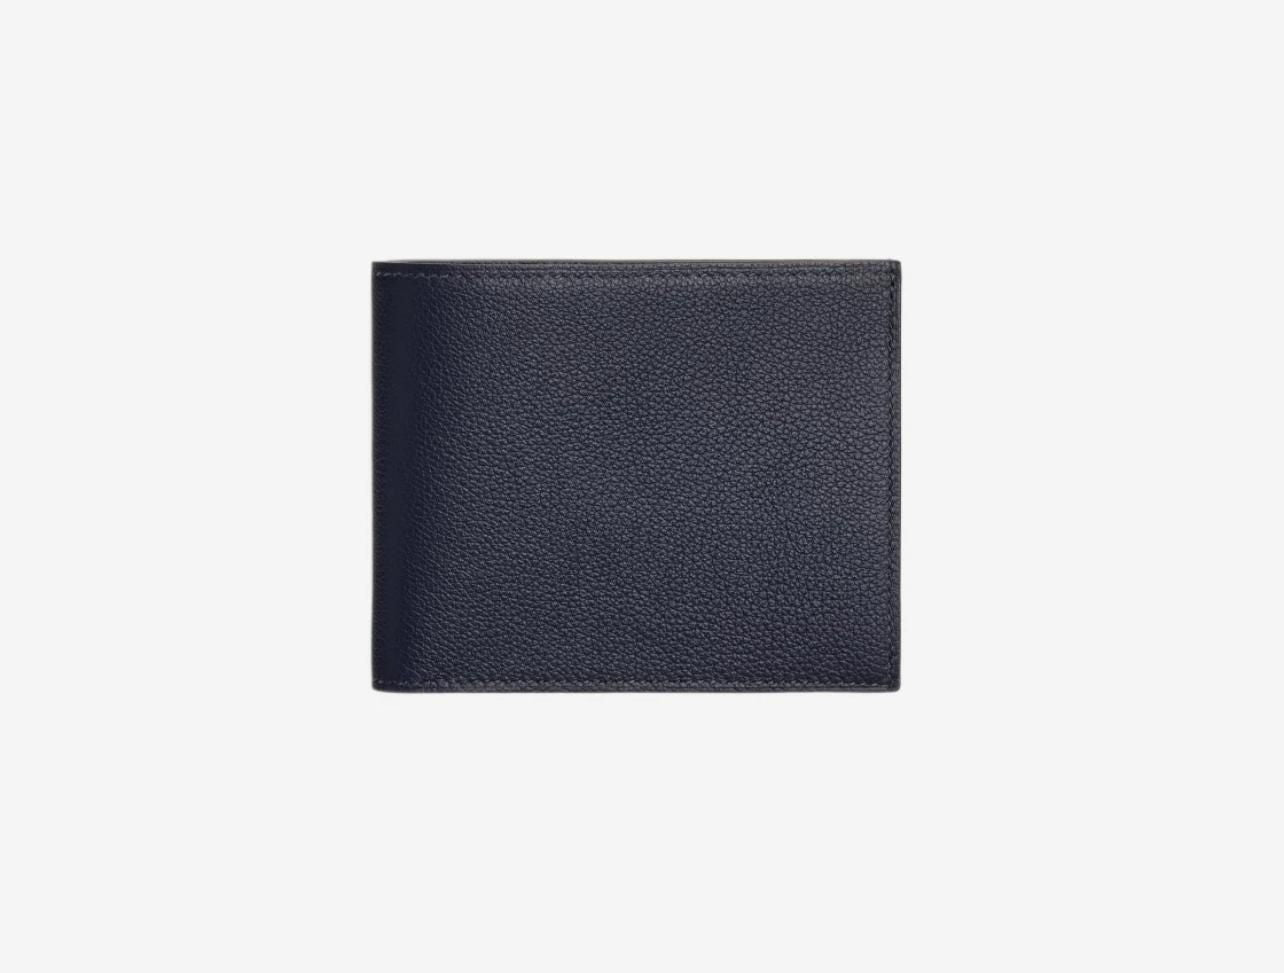 Hermes Citizen Twill Compact Wallet "Evercolor & Bleu Nuit Bleu Saphir"